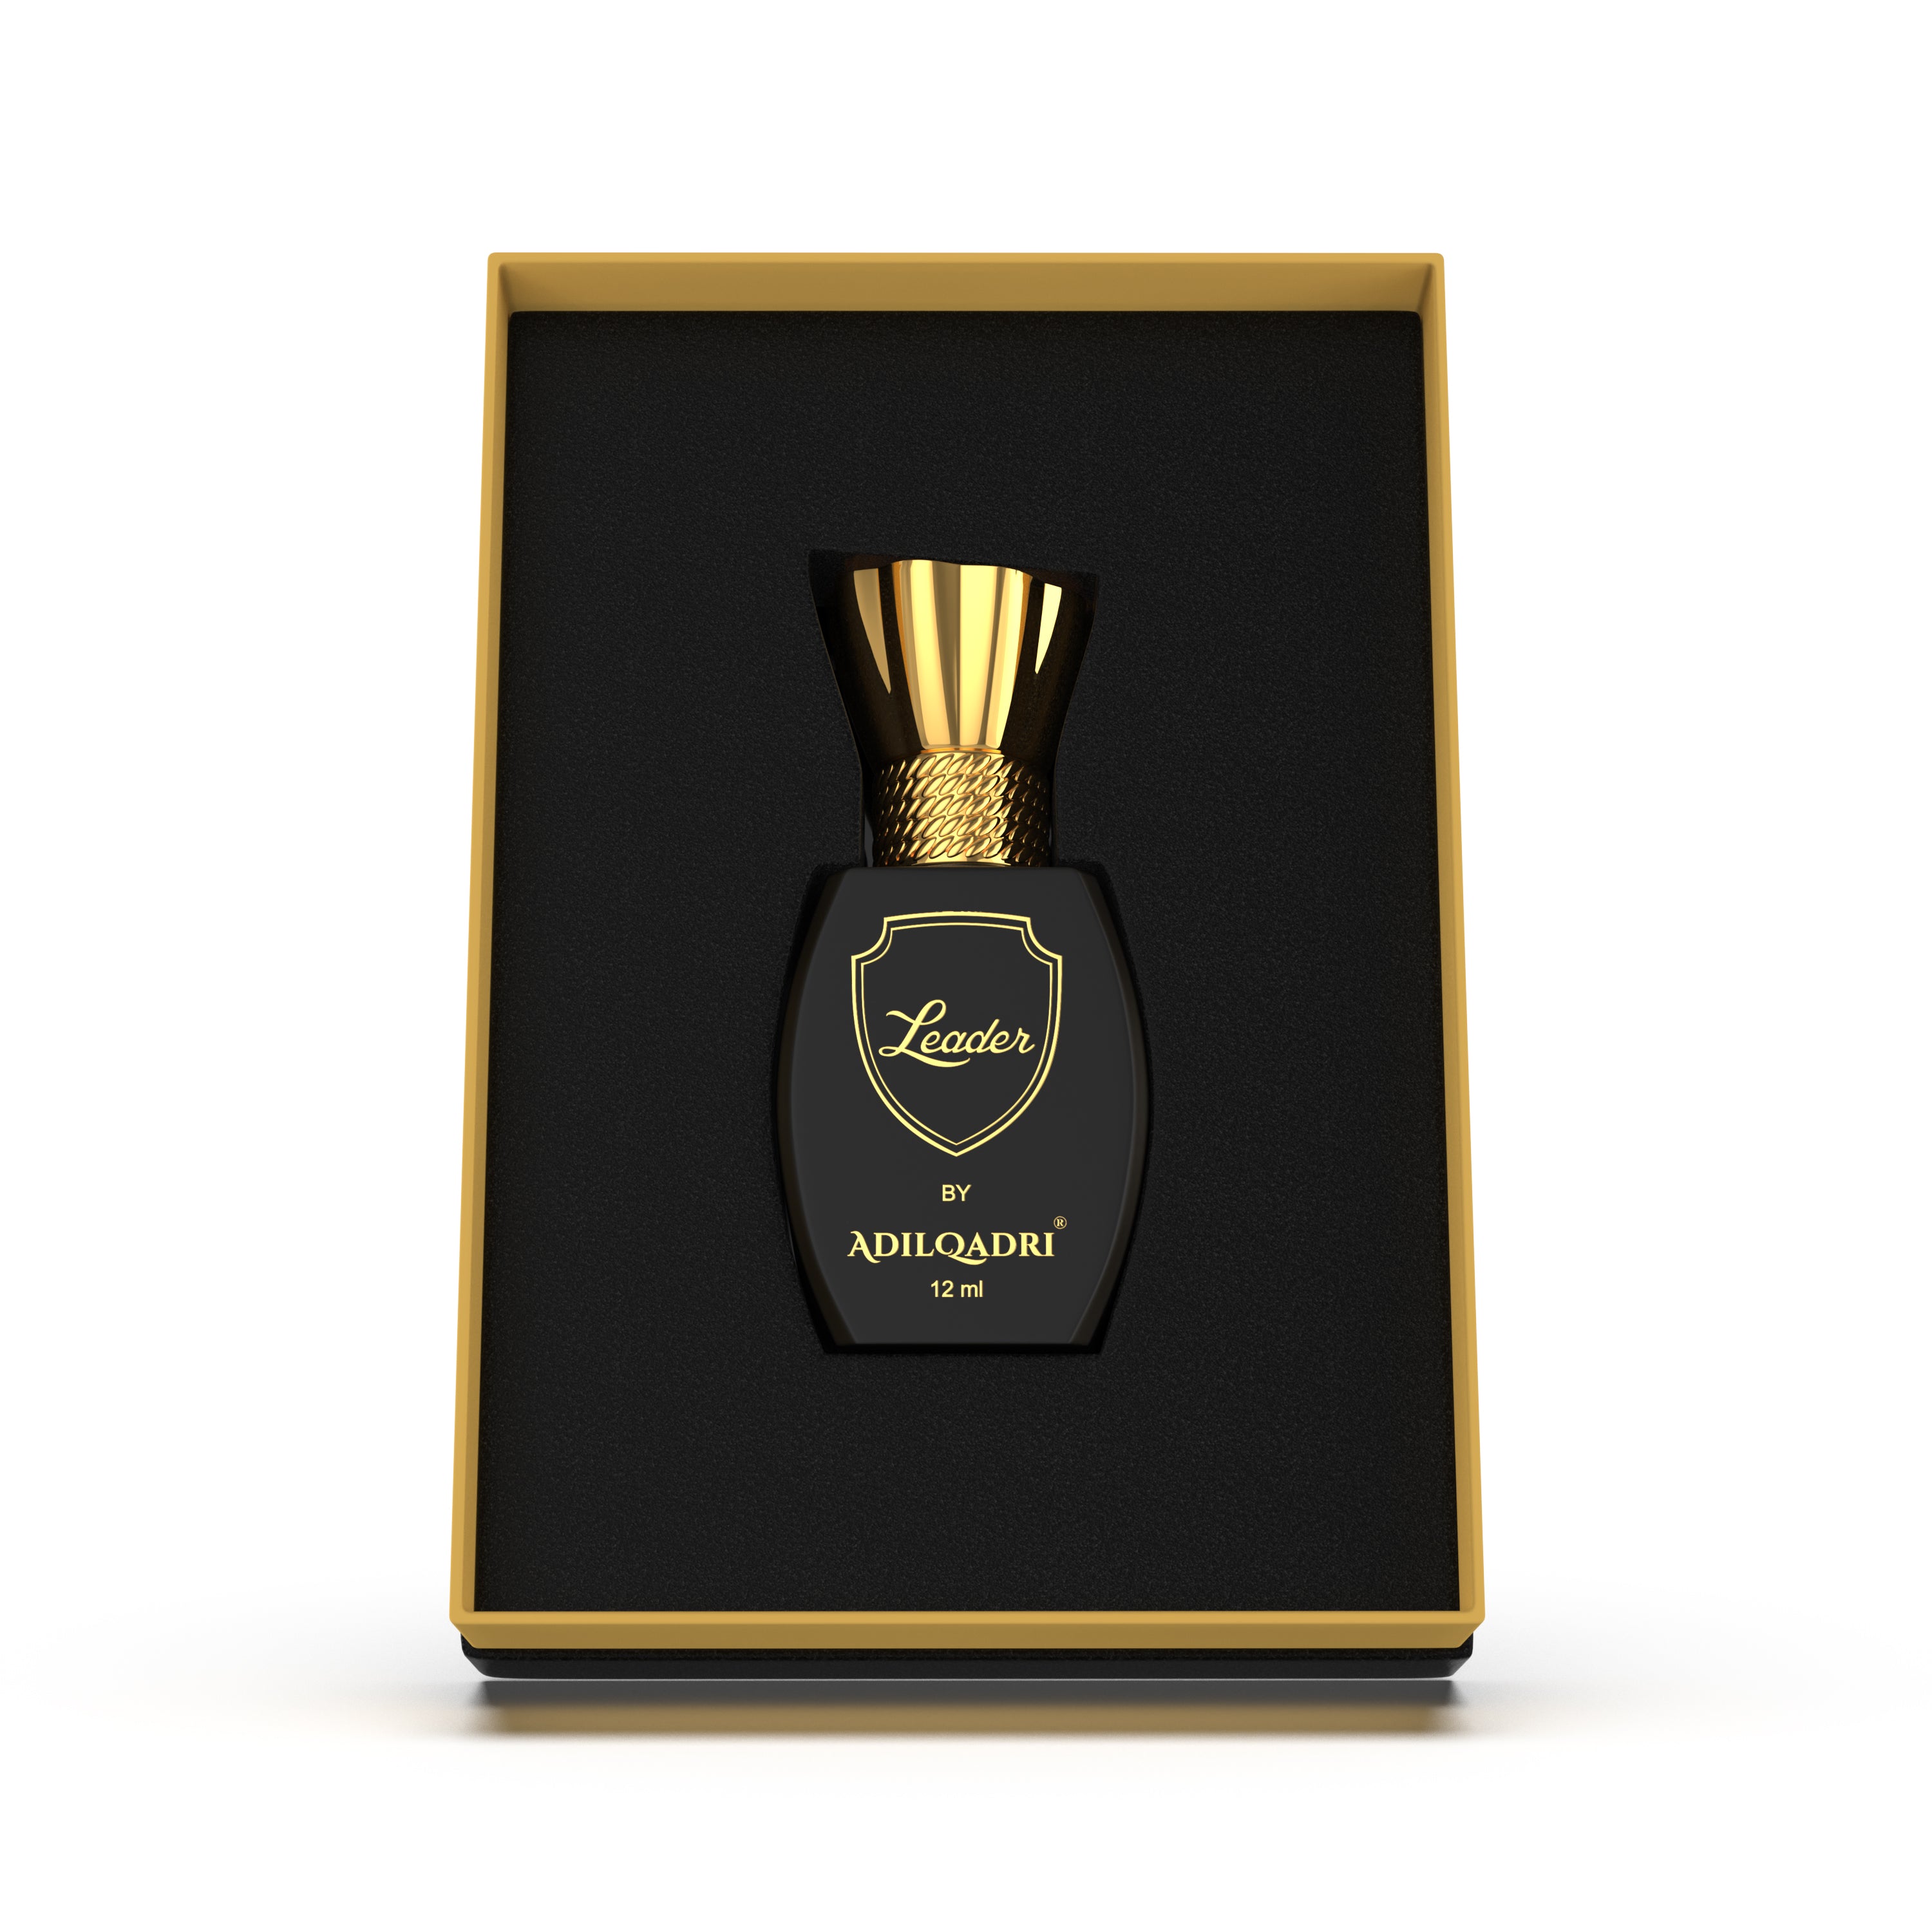 Leader Luxury Attar Perfume